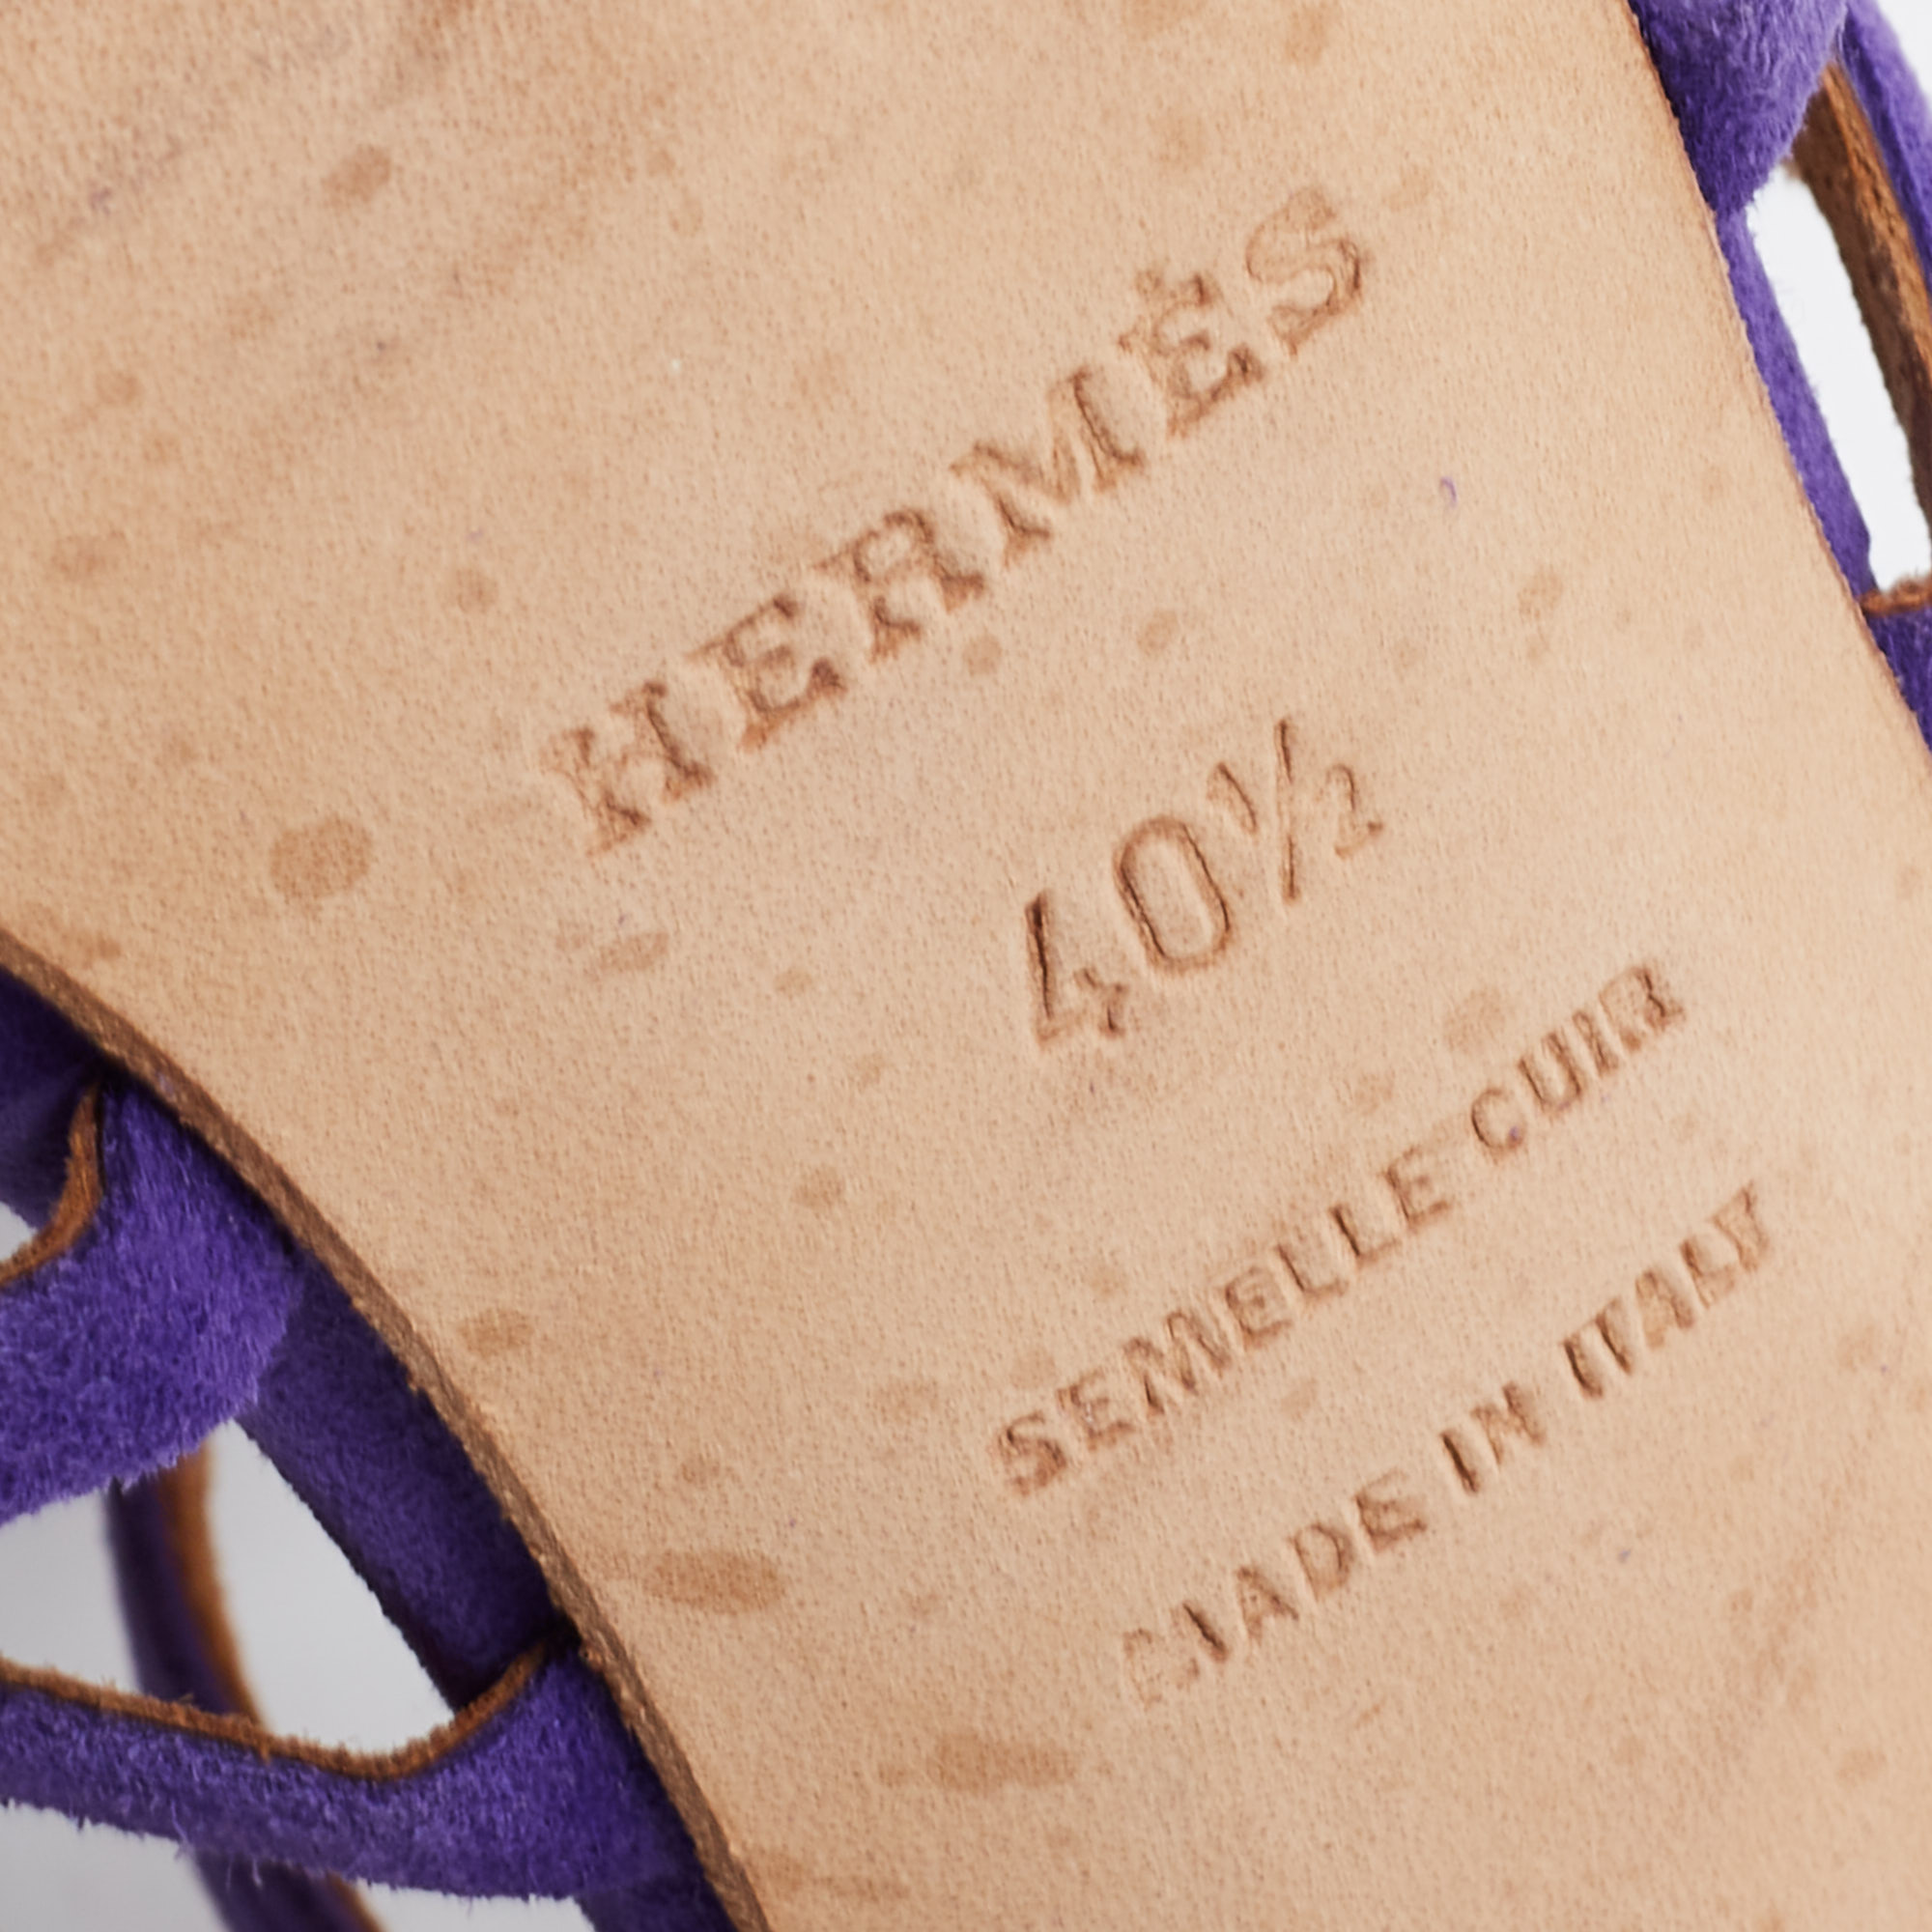 Hermes Purple Suede Cutout Accent Sandals Size 40.5